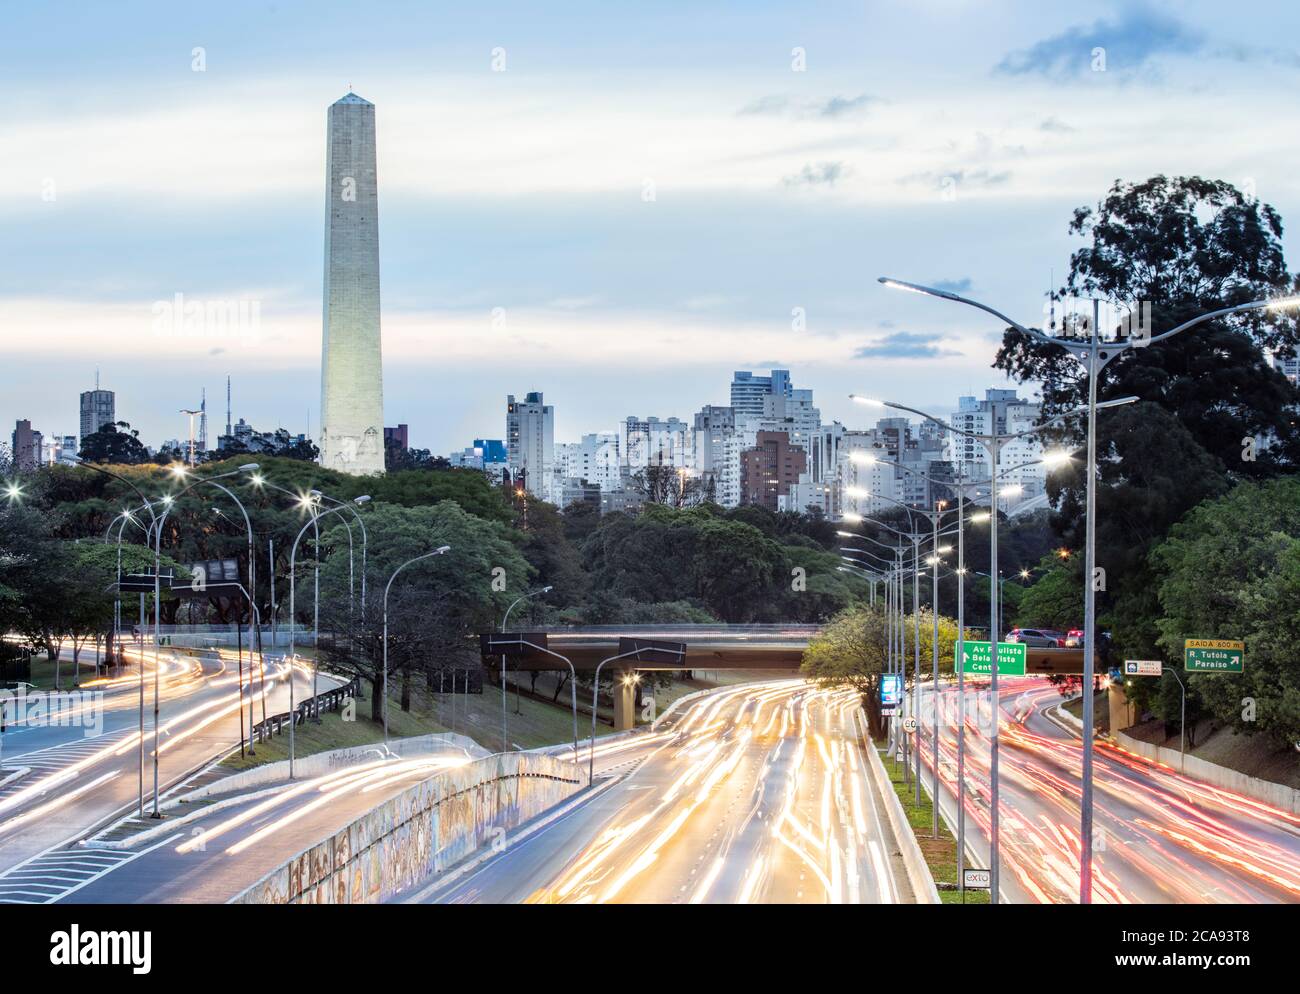 Les feux de circulation de l'heure de pointe sur l'avenue 23 de Maio, la ligne d'horizon et l'obélisque des héros dans le parc Ibirapuera, Sao Paulo, Brésil, Amérique du Sud Banque D'Images